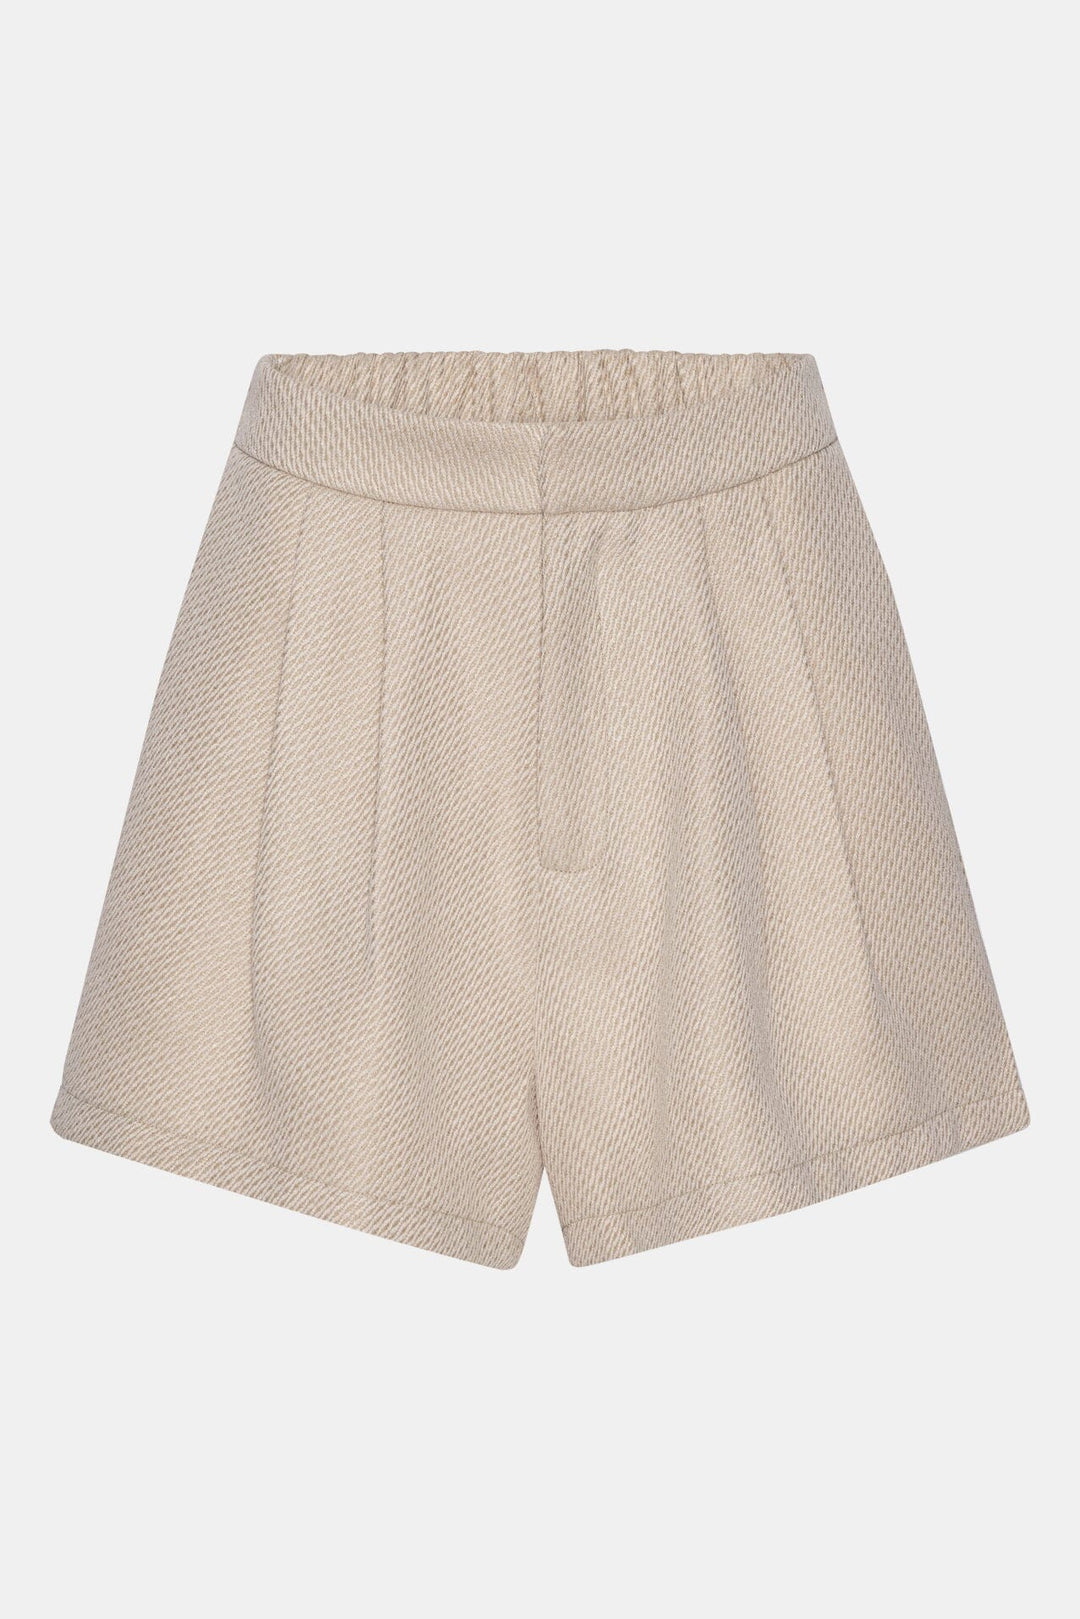 BYIC - Albaic Shorts - s Sand Shorts 